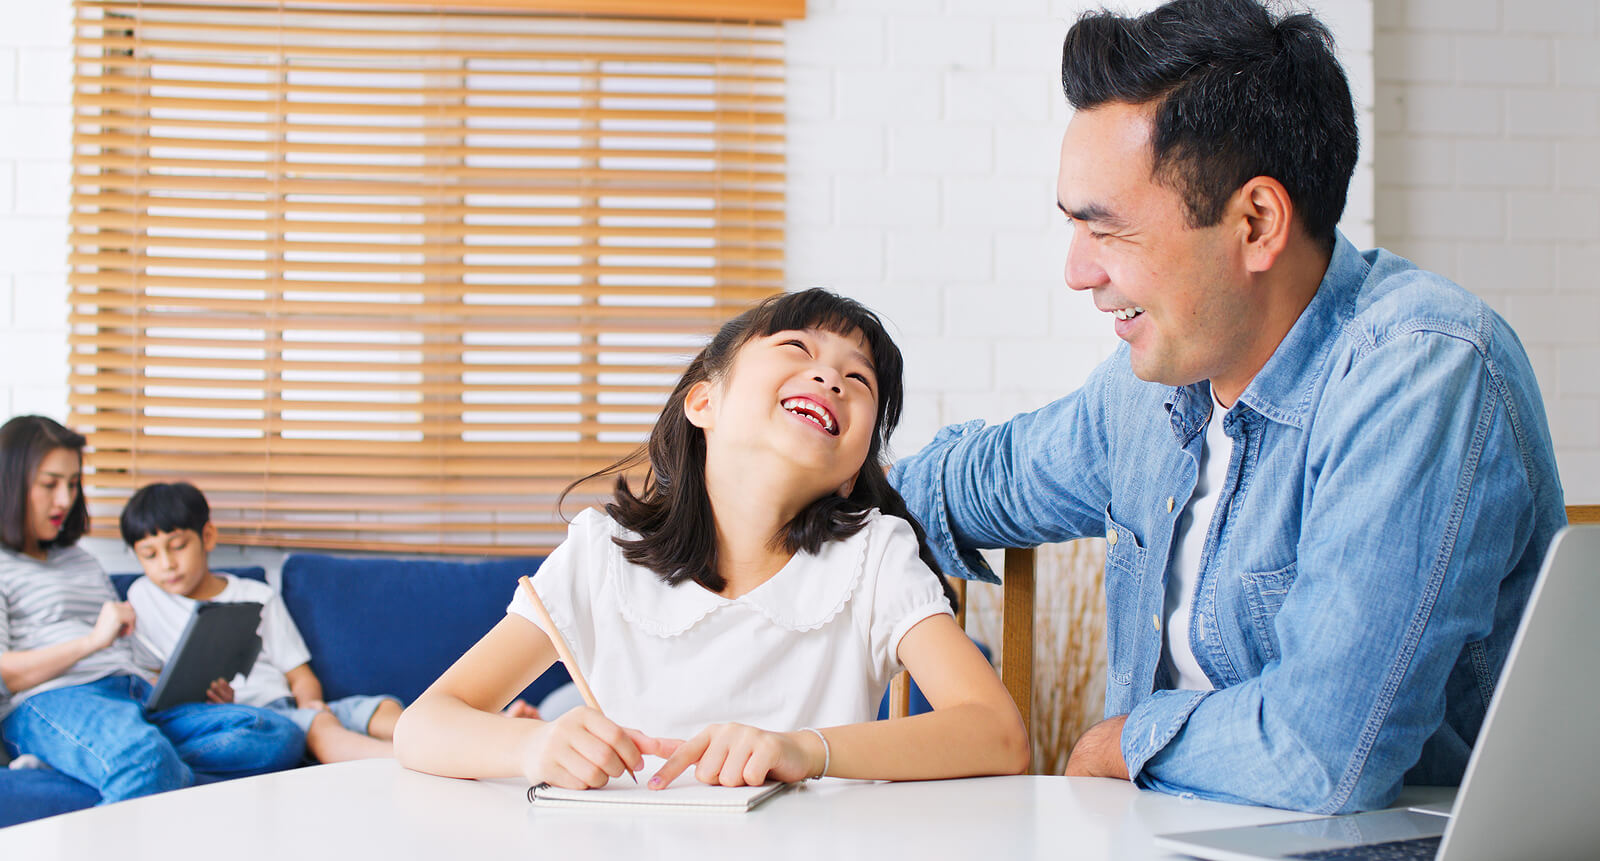 Nuori tyttö hymyilee isälleen tehdessään läksyjä.